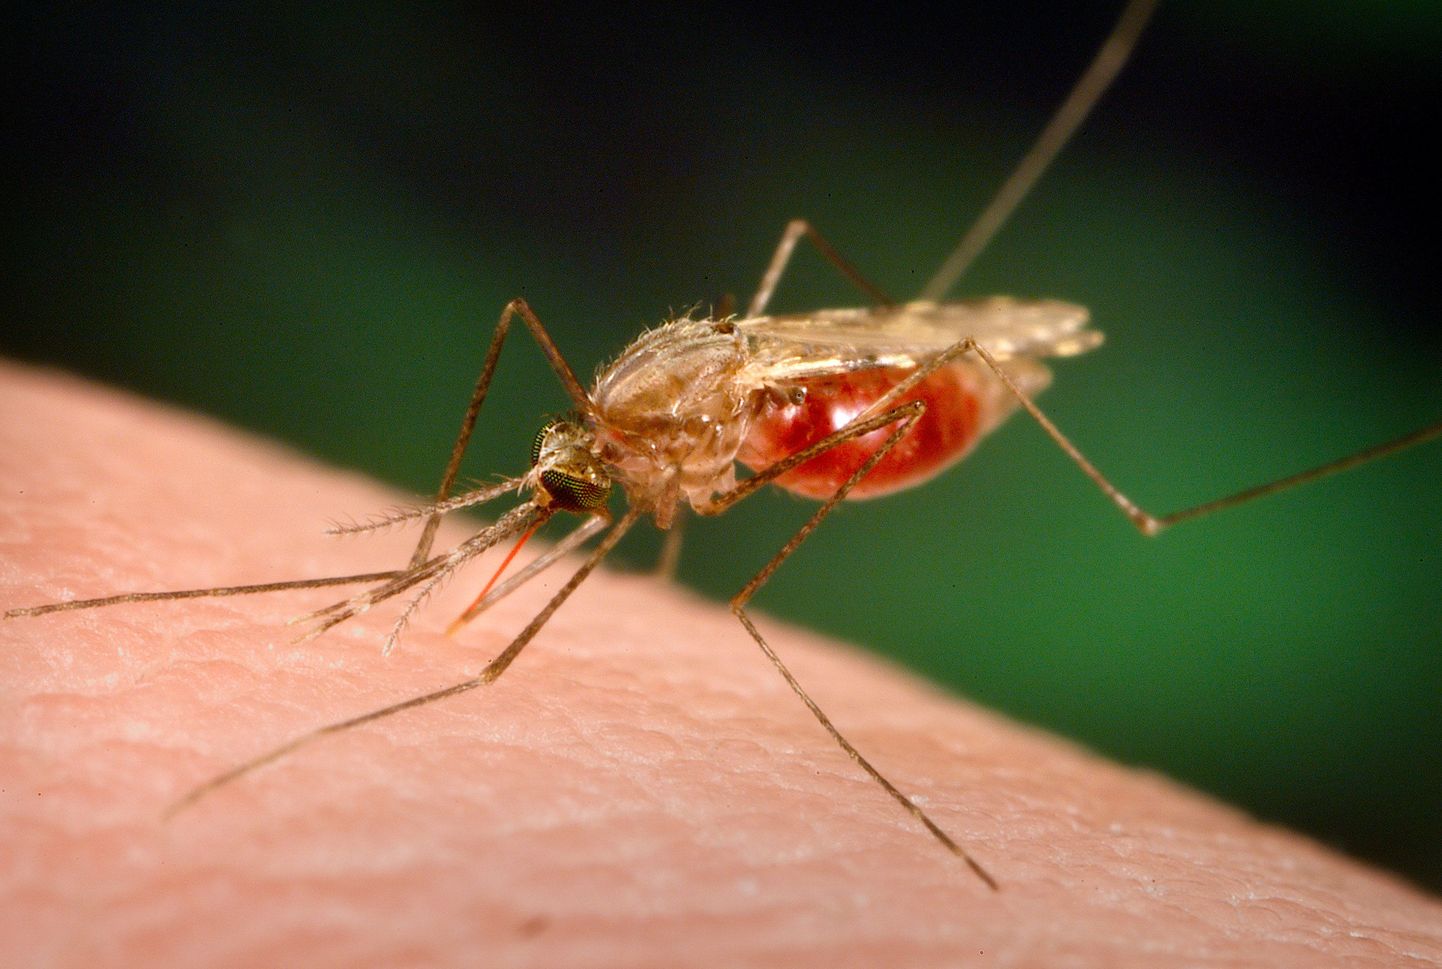 Malaariaparasiit levib sääsehammustustega.